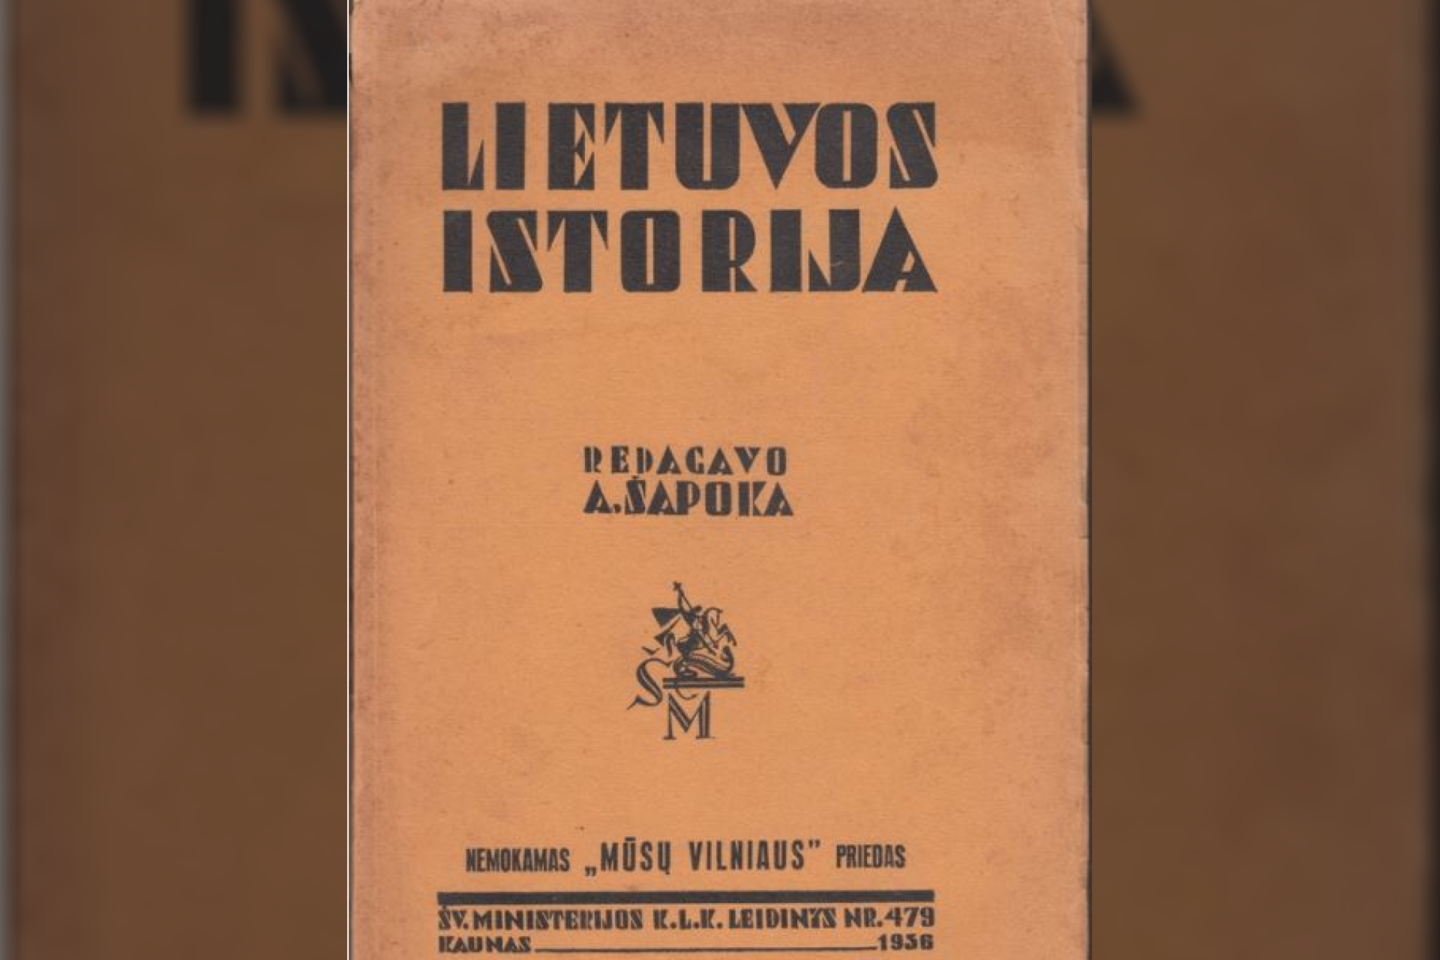 1906 m. gimė istorikas Adolfas Šapoka. Reikšmingiausias veikalas – jo ir kitų istorikų 1936 m. parašyta „Lietuvos istorija“ – turėjo didelės reikšmės išsaugant istorinę savimonę sovietų okupacijos metais.